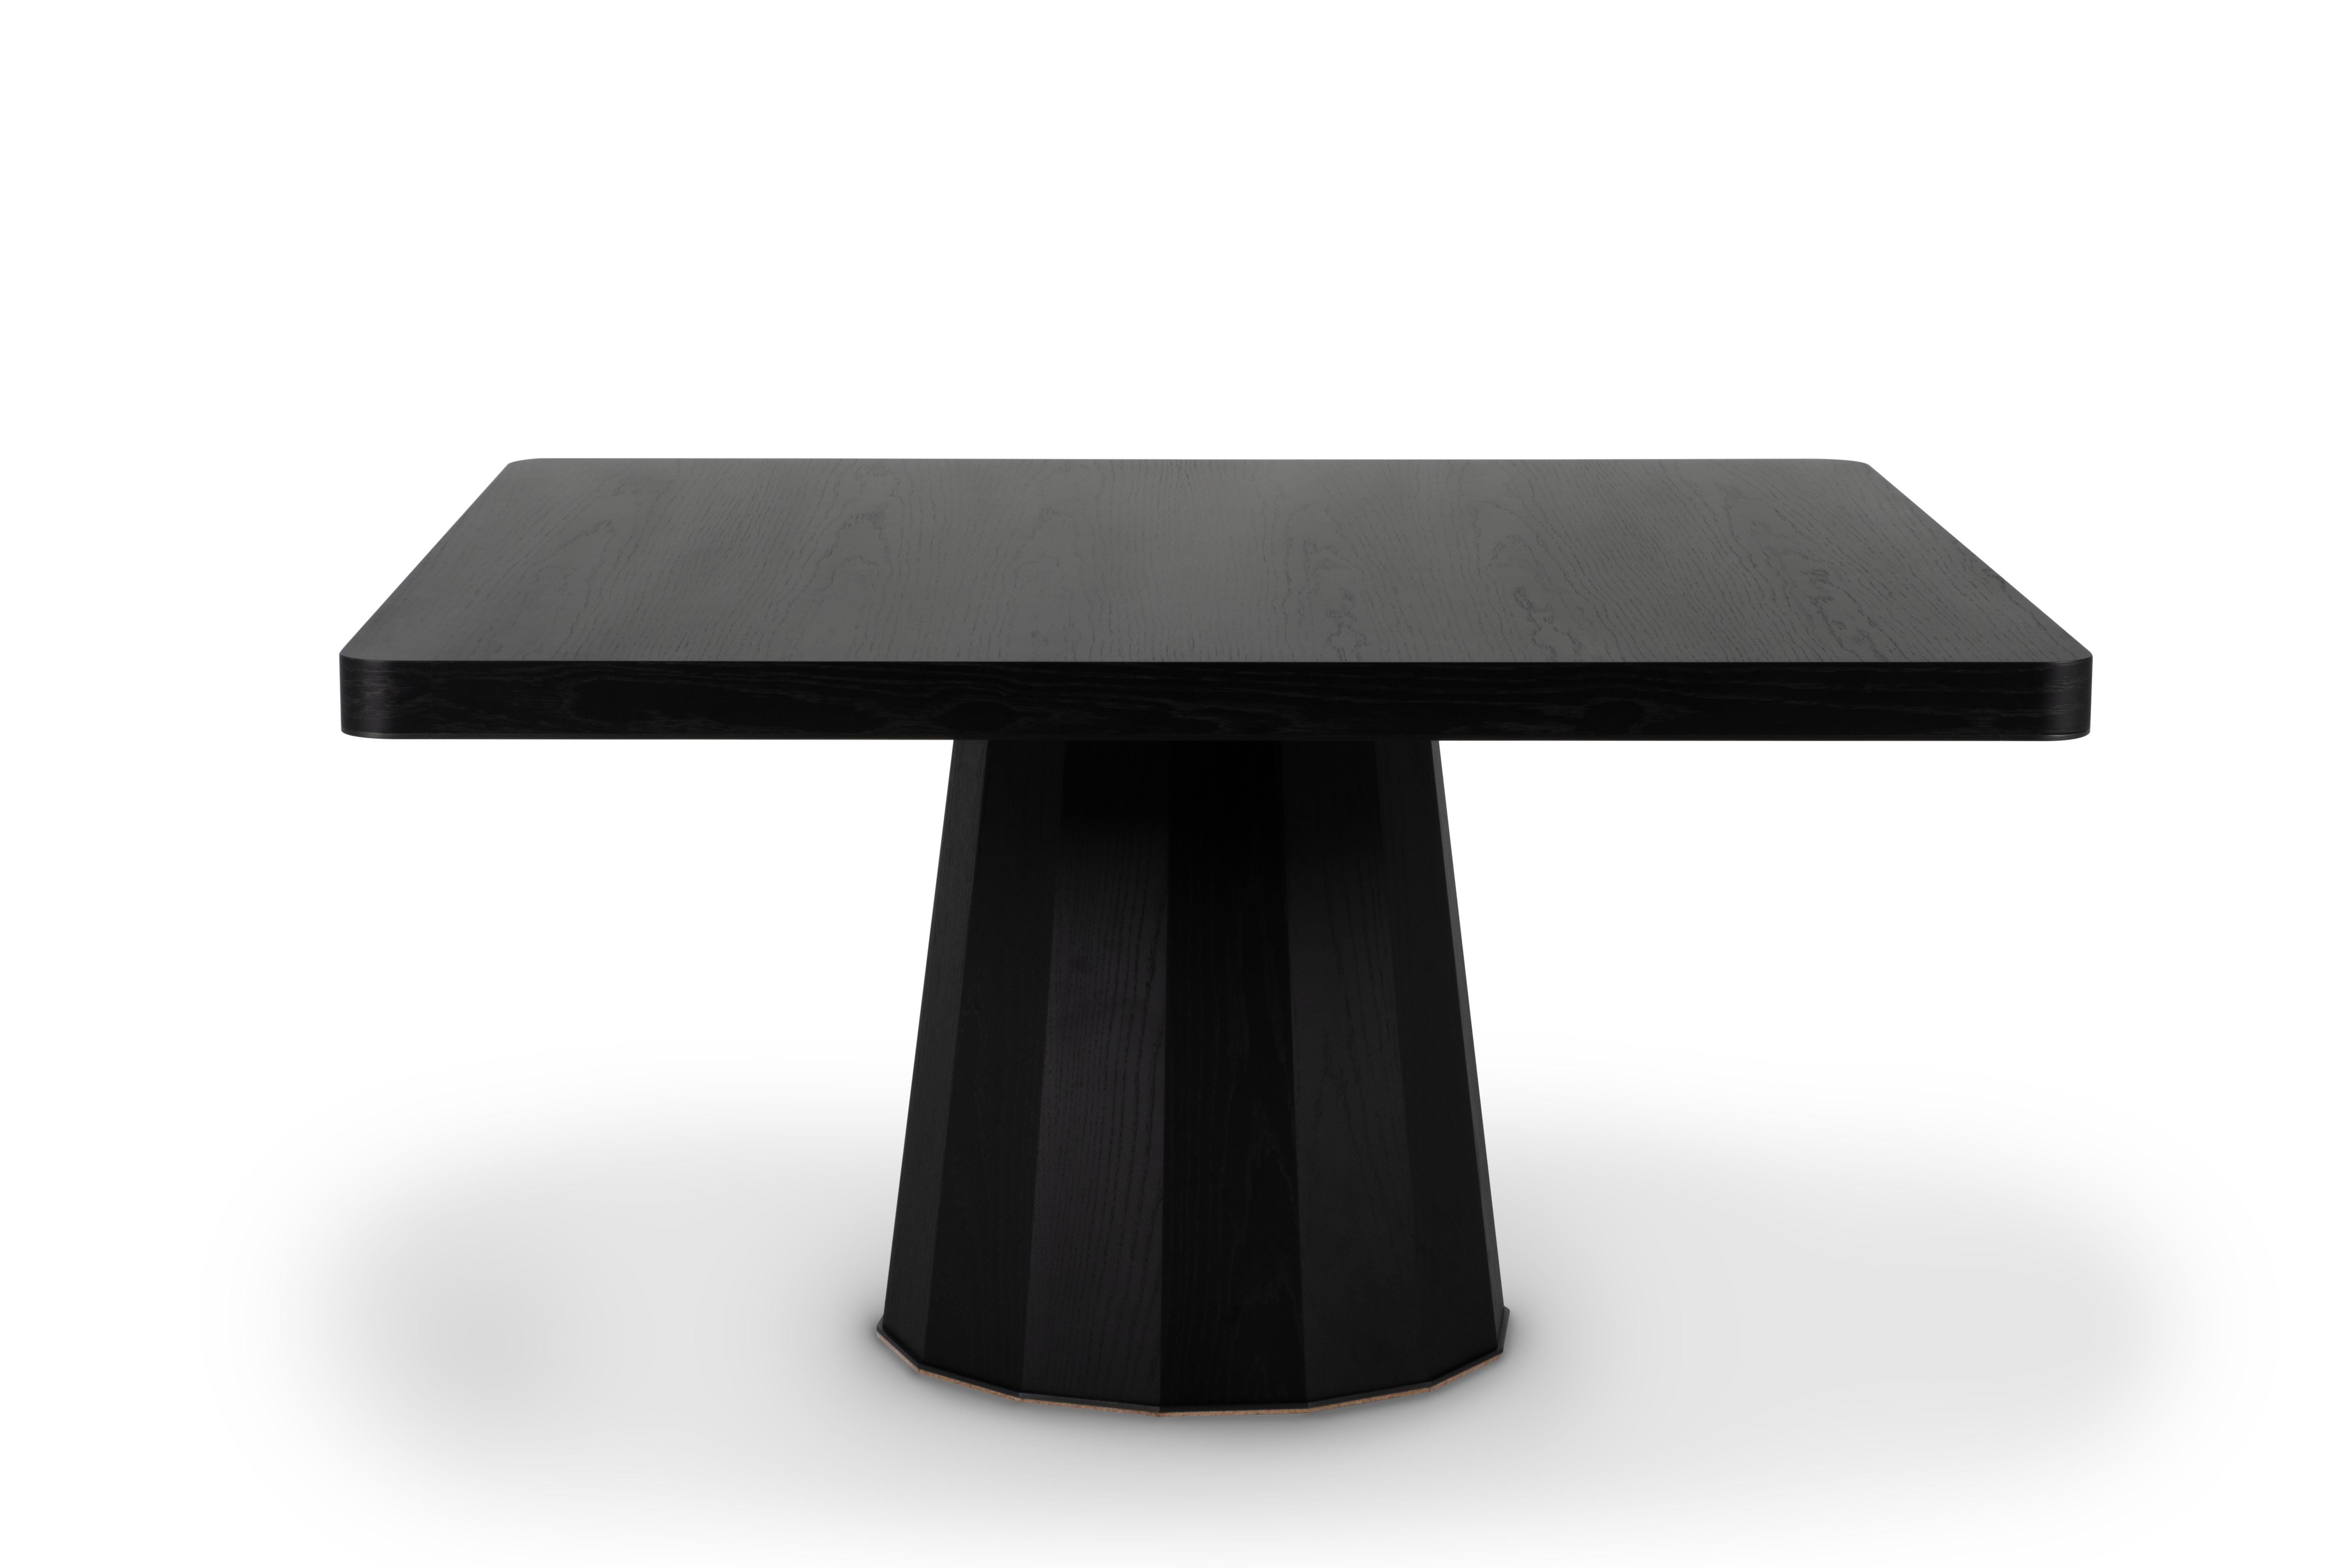 Howlite Esstisch mit 8 Sitzplätzen, Modern Collection, handgefertigt in Portugal - Europa von GF Modern.

Der schwarze Esstisch Howlite steht für den Beginn einer neuen modernen Ära. Das schwarz oxidierte Messingdetail auf der Tischplatte ergänzt